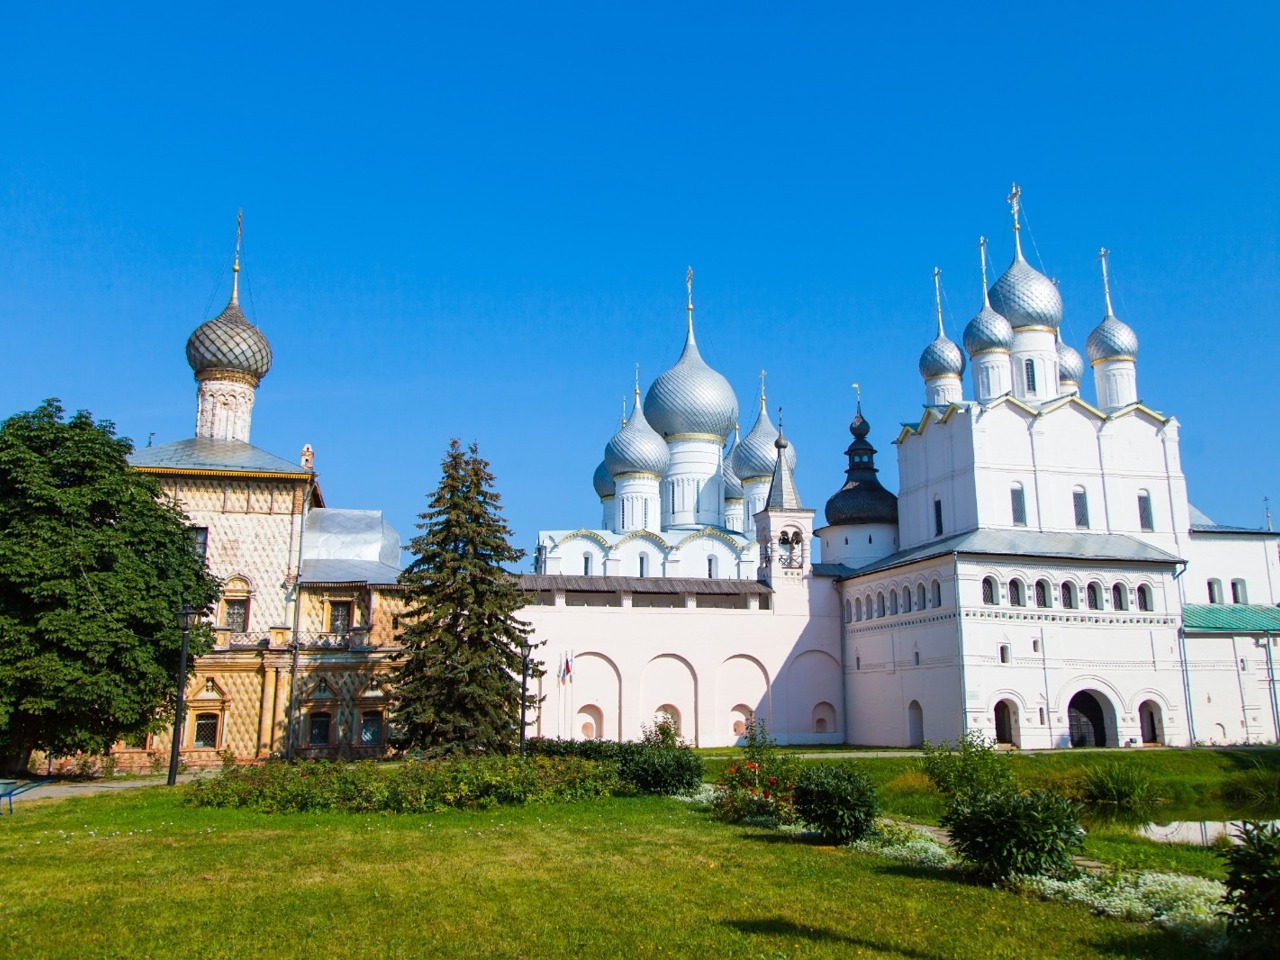 Изучаем Ростов Великий: Кремль + Старый город | Цена 5000₽, отзывы, описание экскурсии